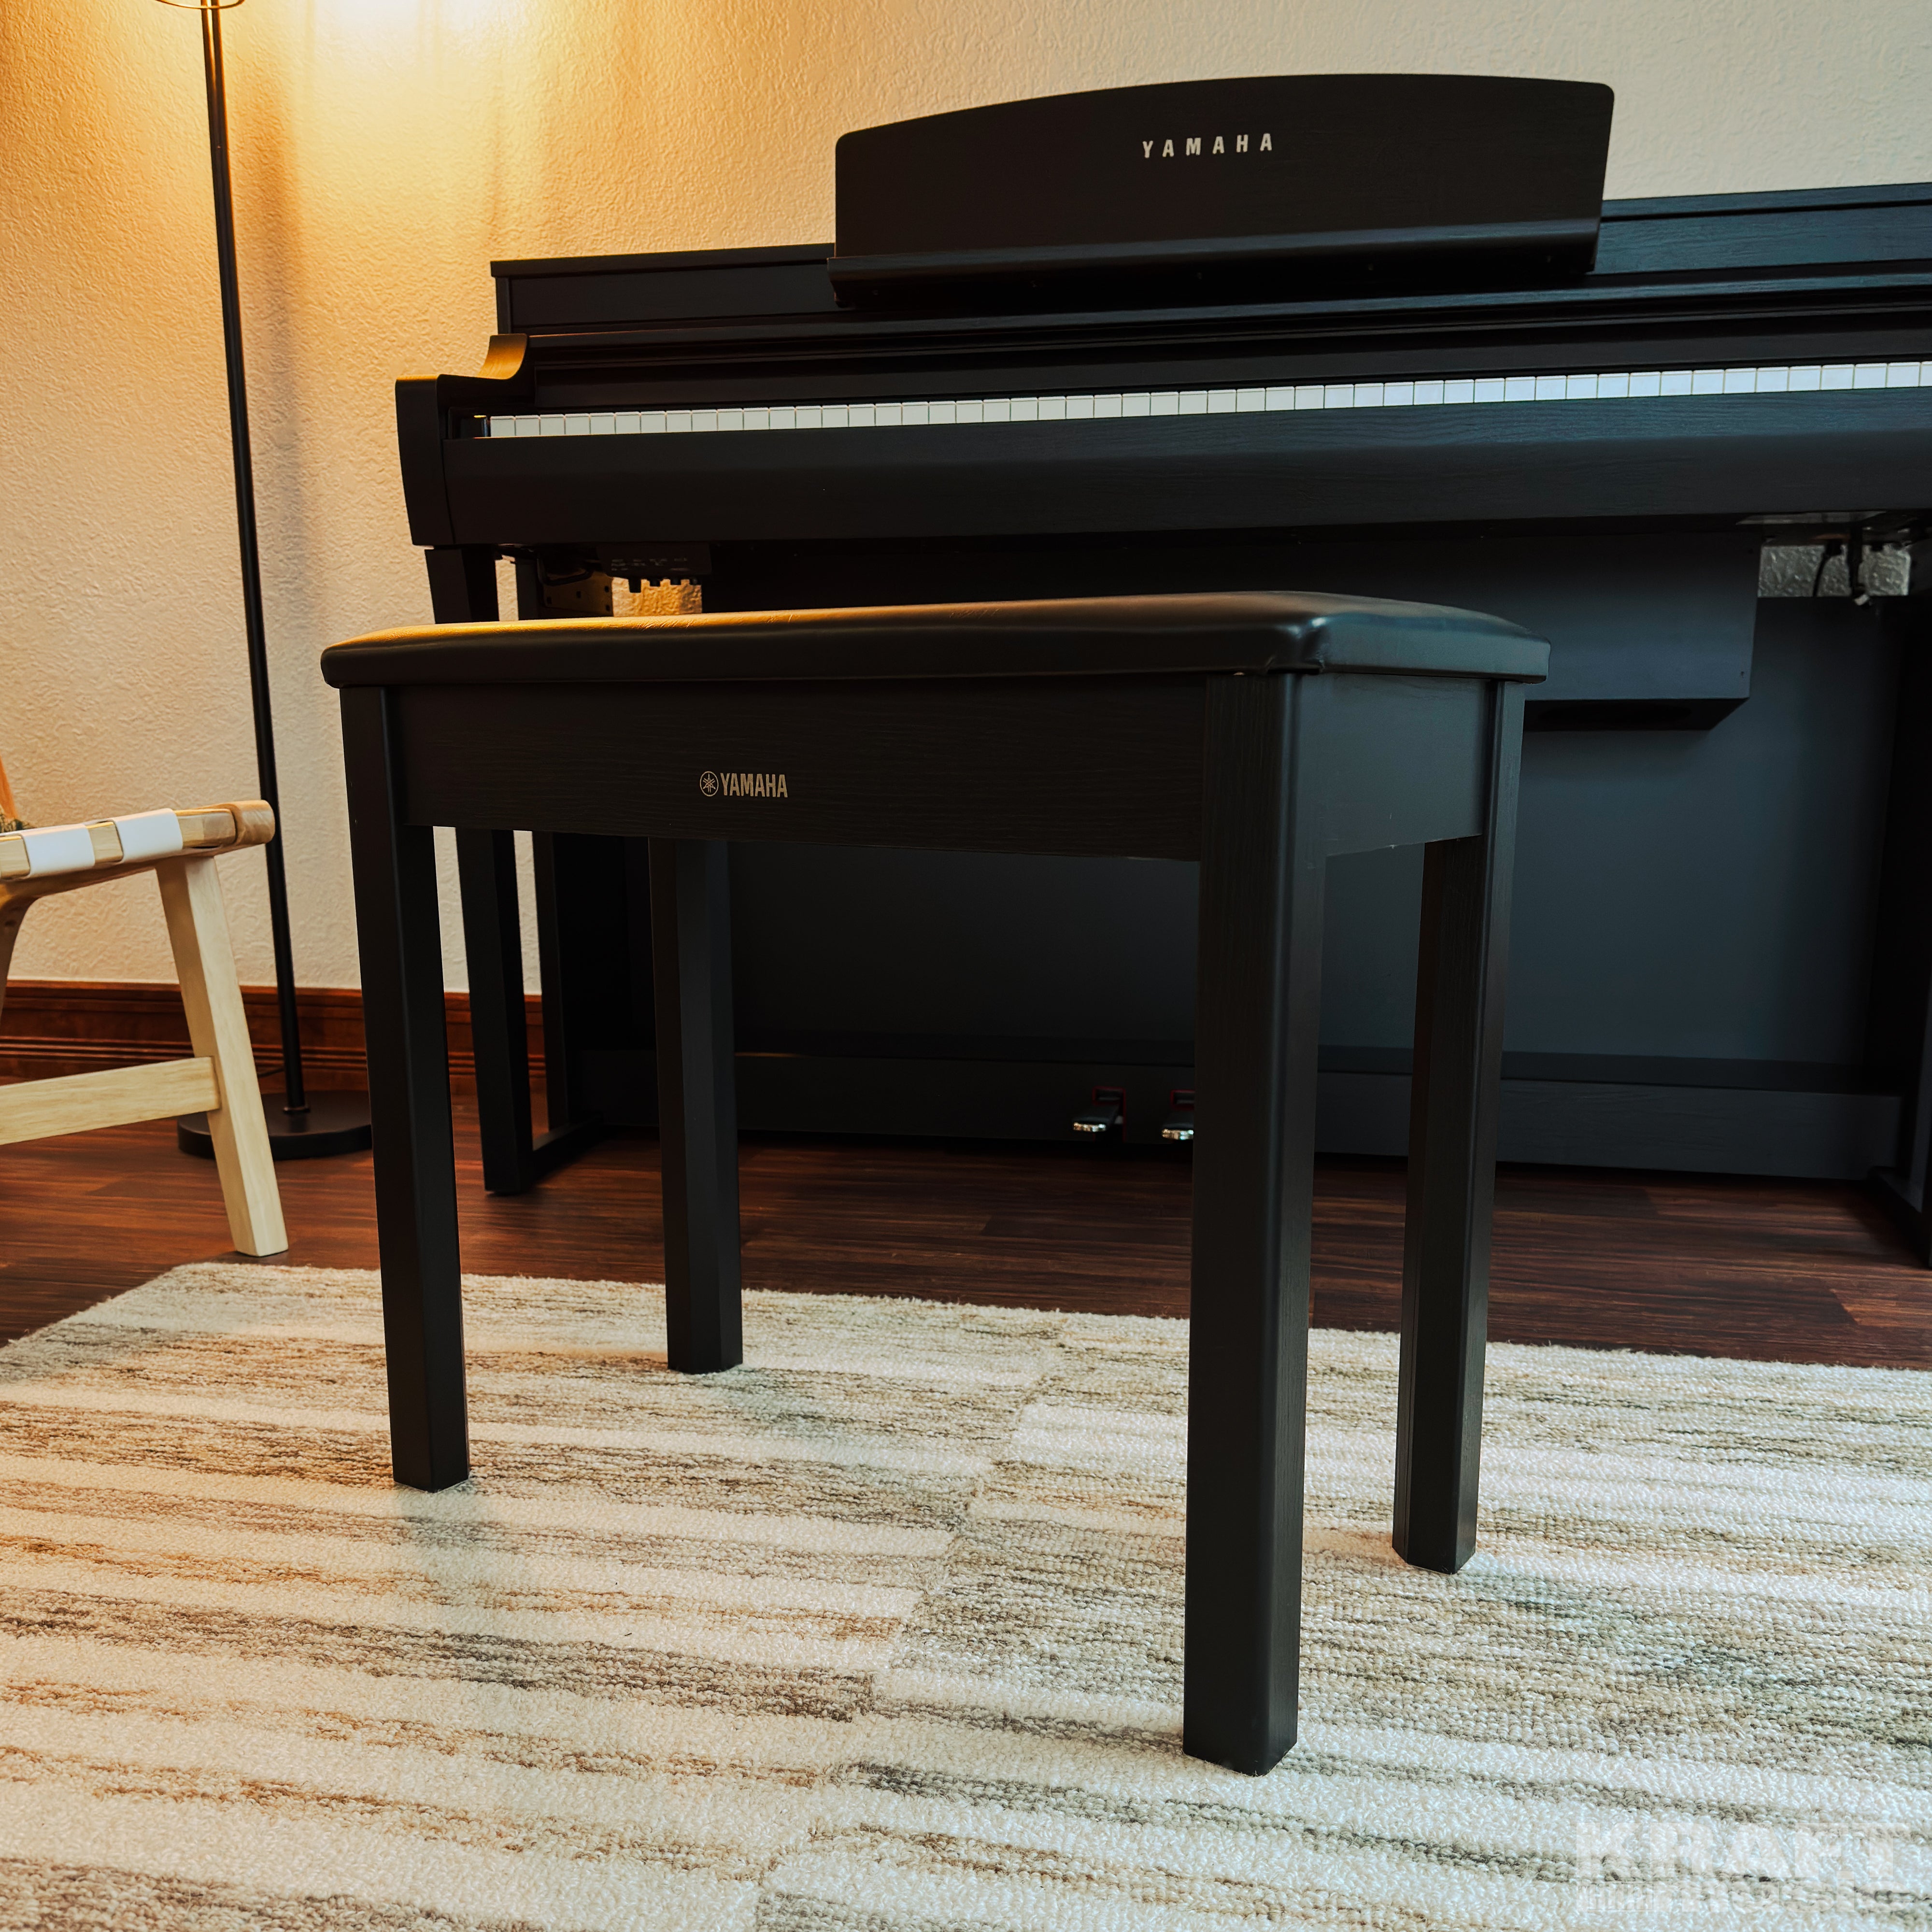 Yamaha Clavinova CSP-275 Digital Piano - Black Walnut - bench